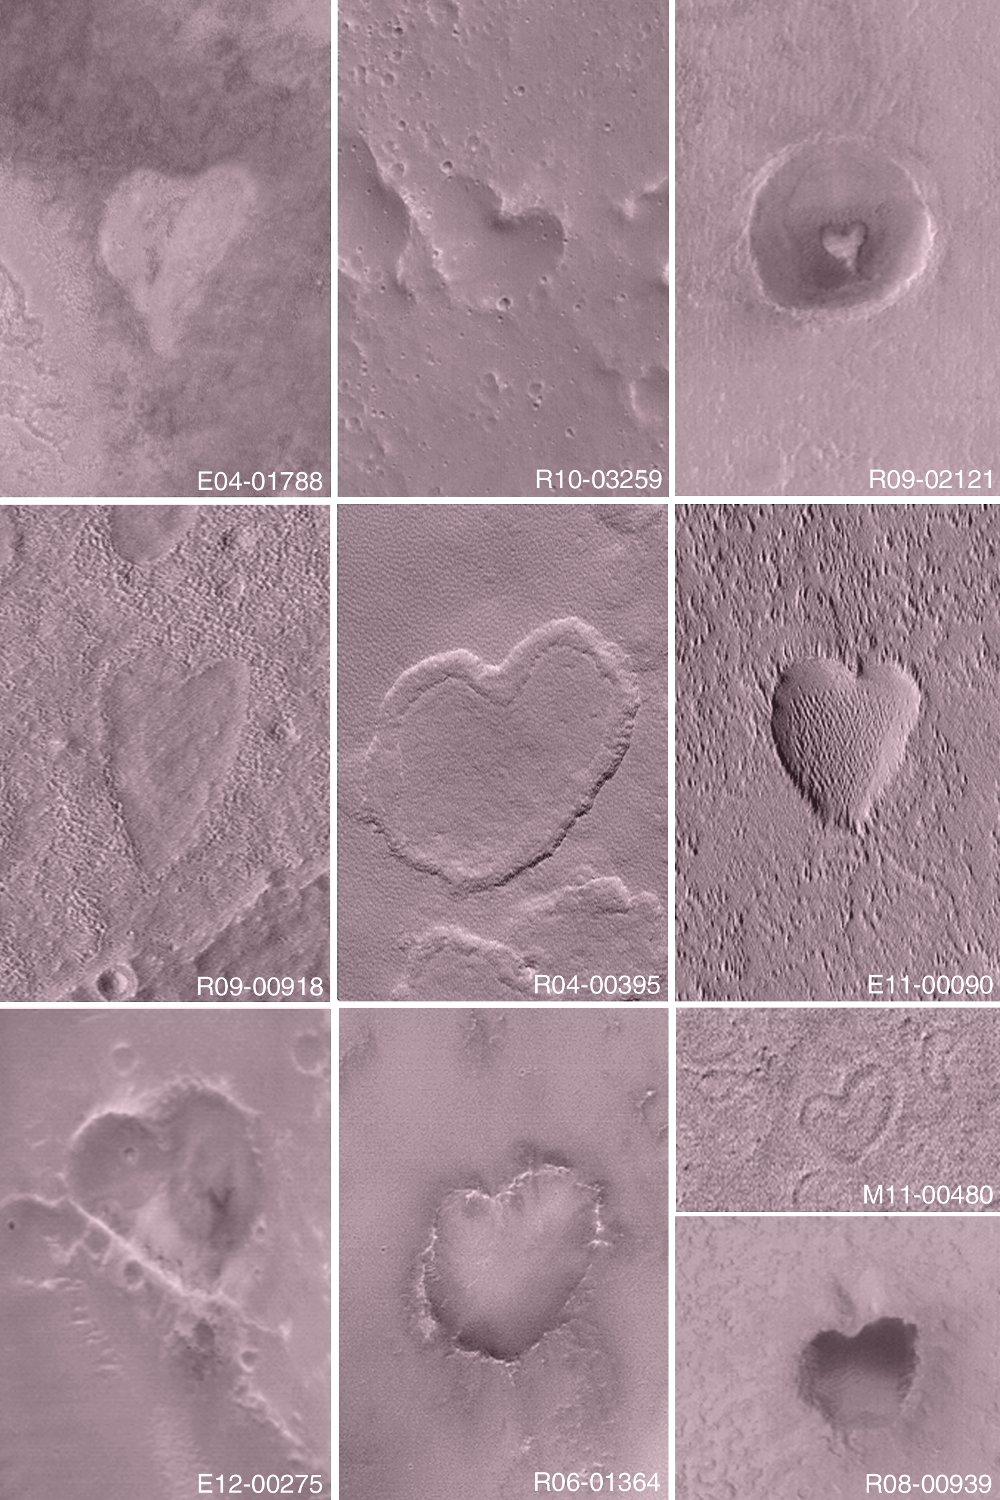 Les coeurs à la surface de Mars